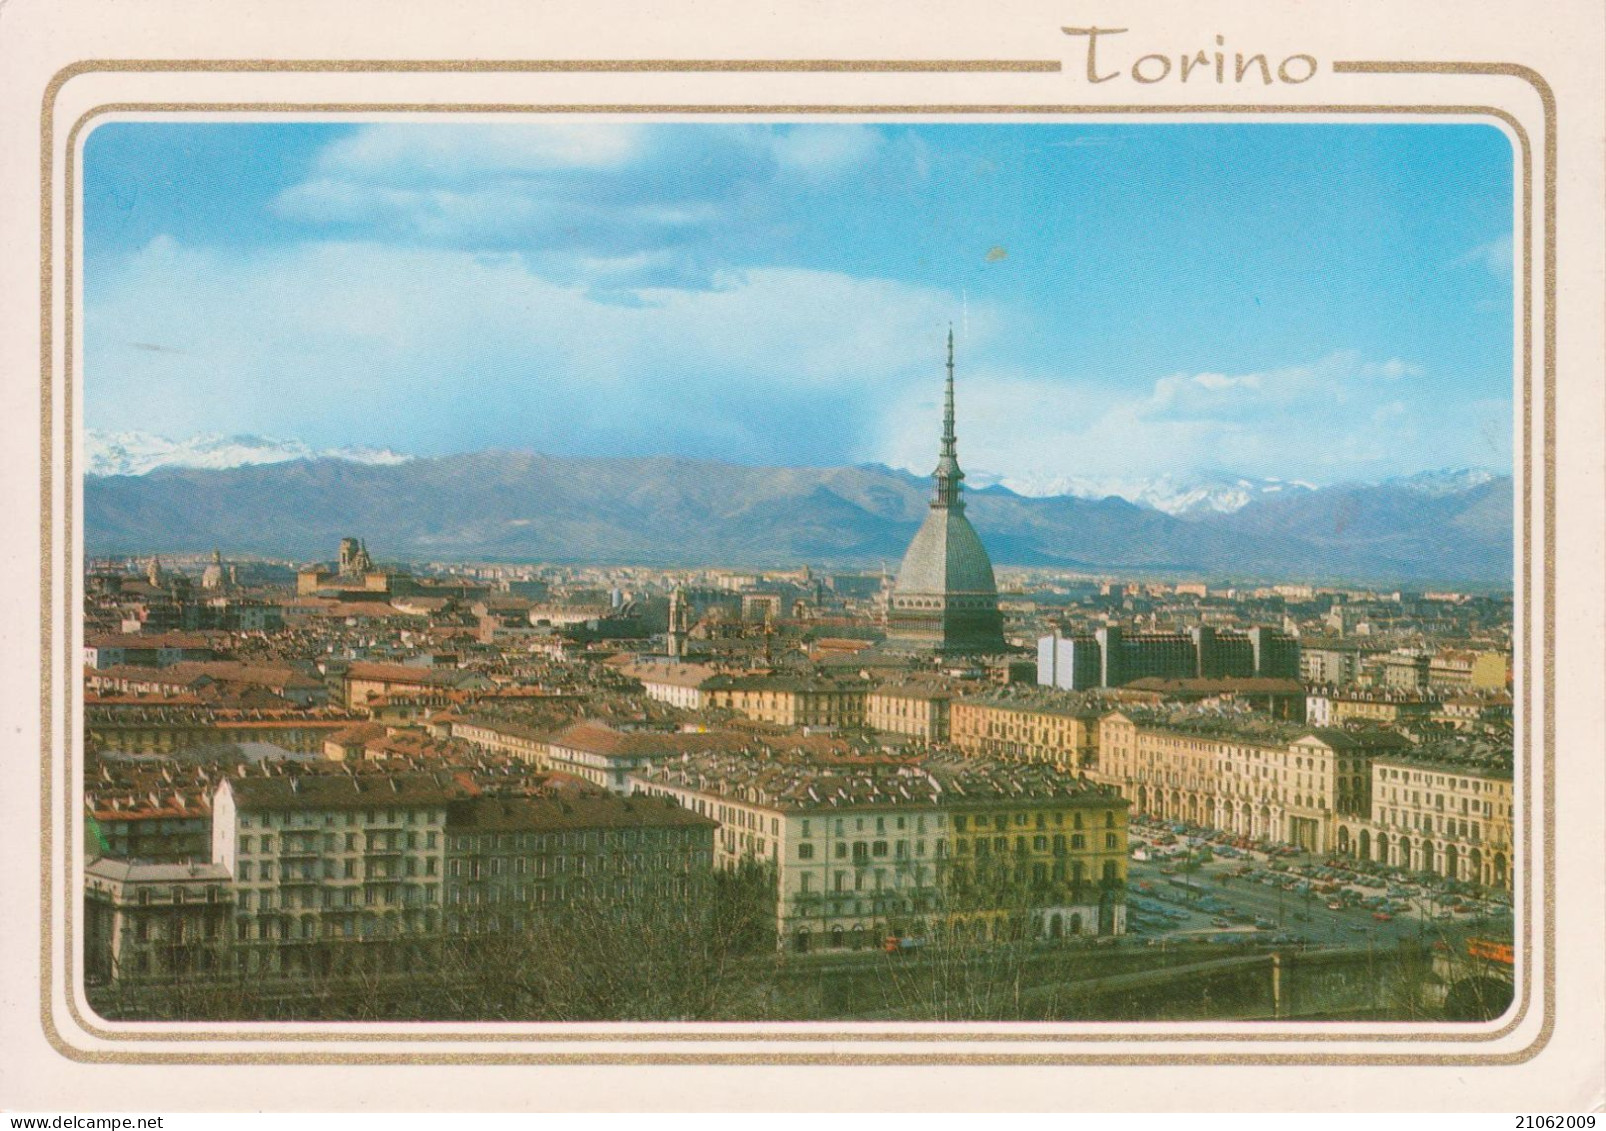 TORINO - PANORAMA - PIAZZA VITTORIO VENETO E MOLE ANTONELLIANA, VISTE DAL MONTE DEI CAPPUCCINI - NV - Panoramic Views